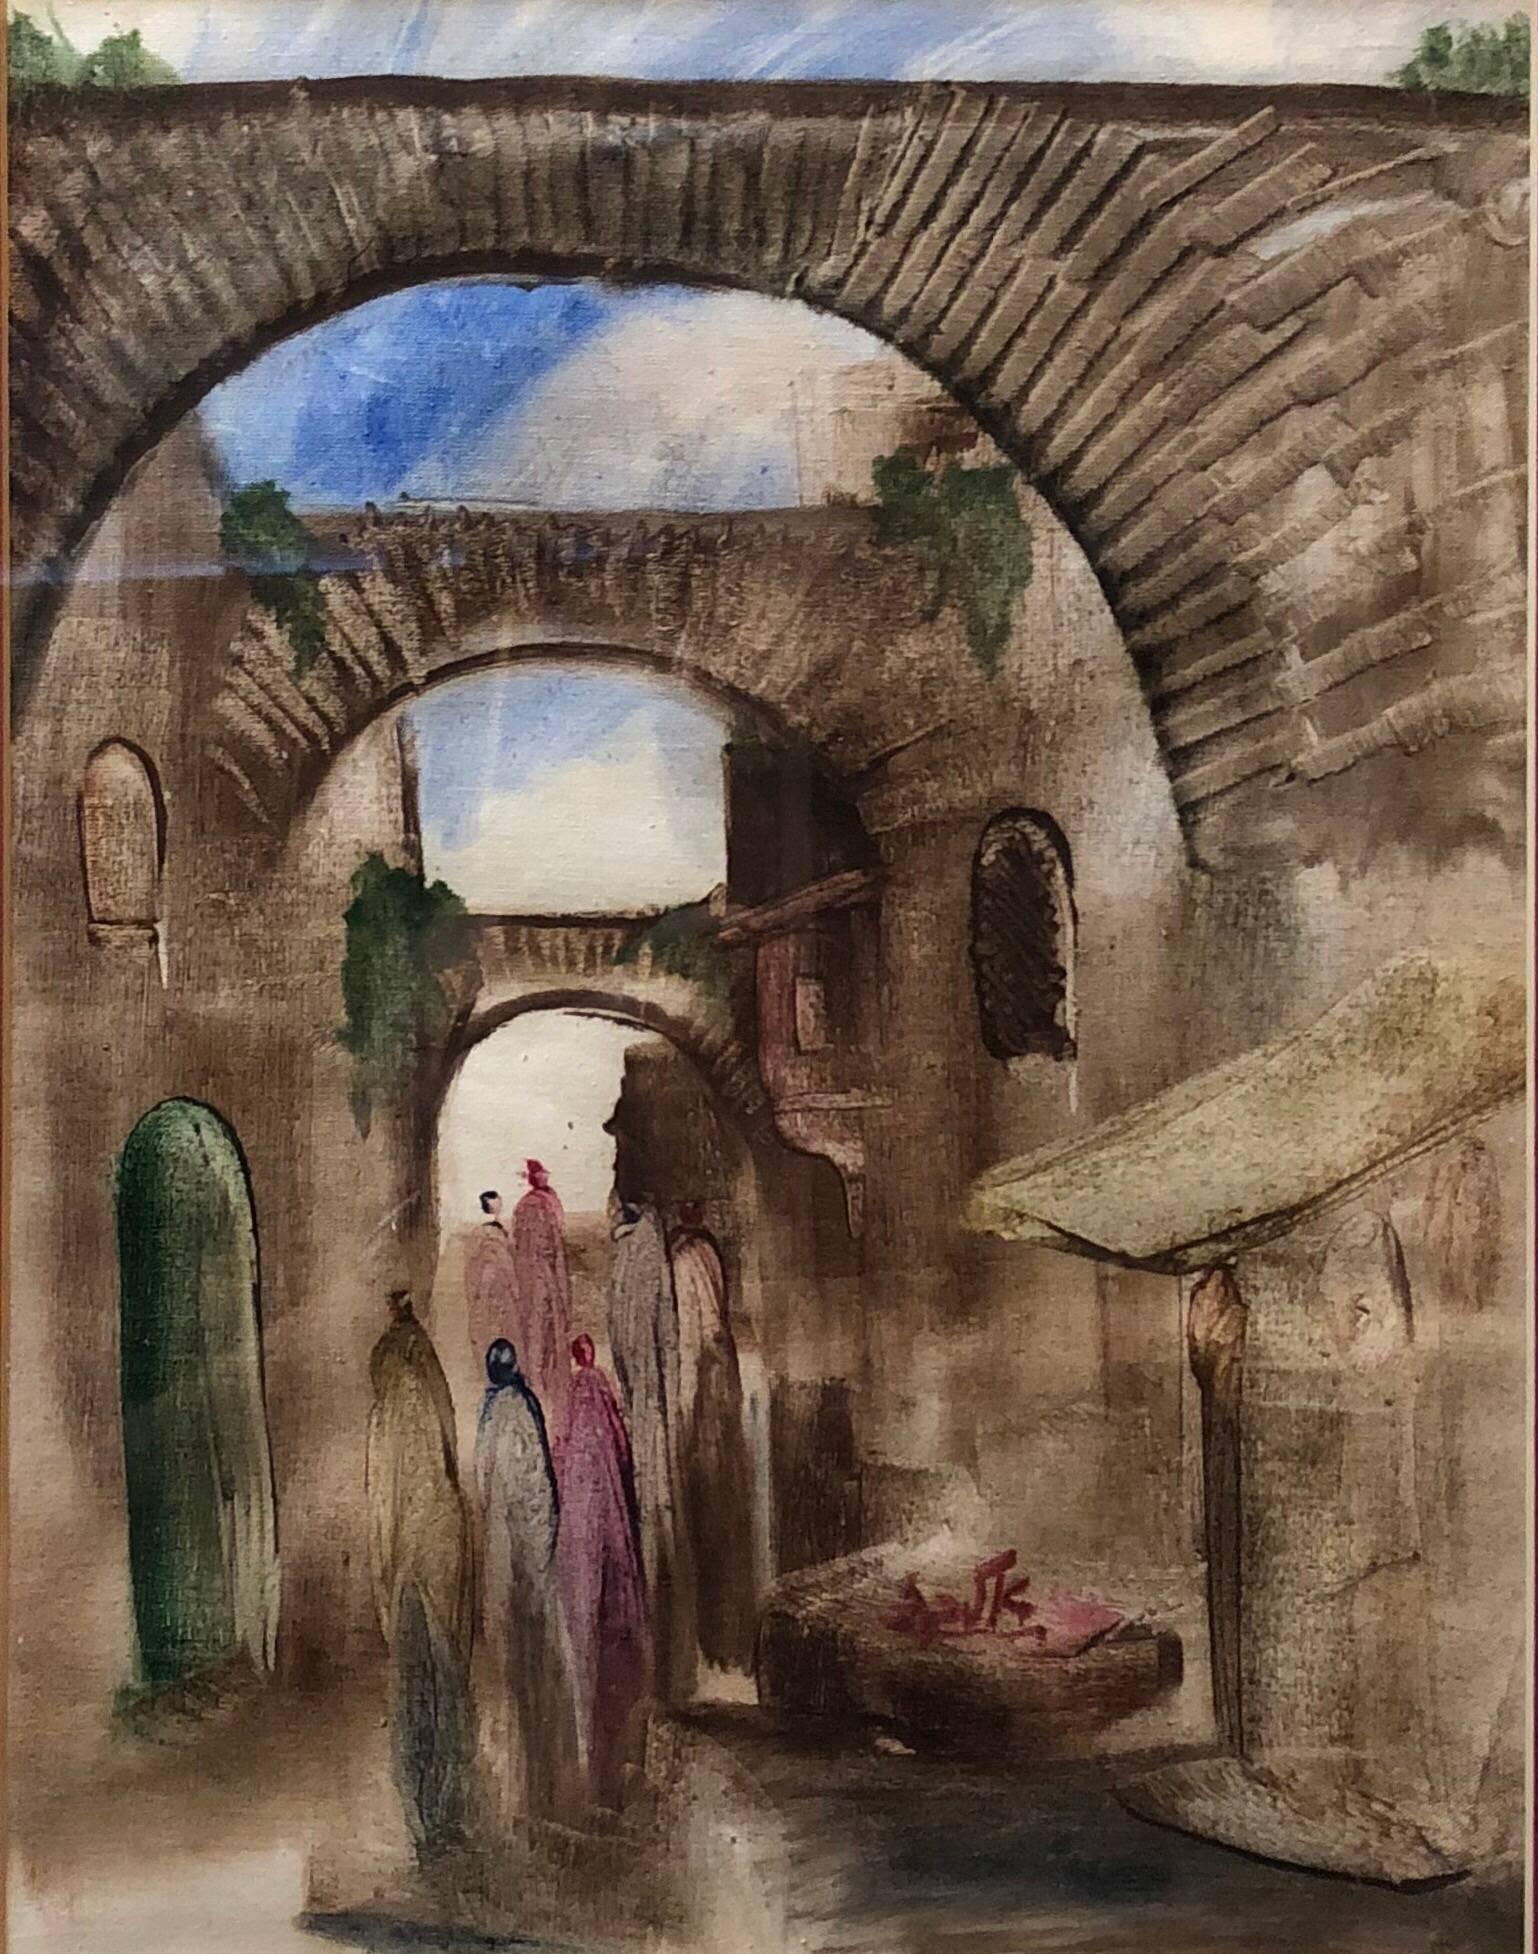 Paysage de la vieille ville de Jérusalem, peinture expressionniste juive israélienne